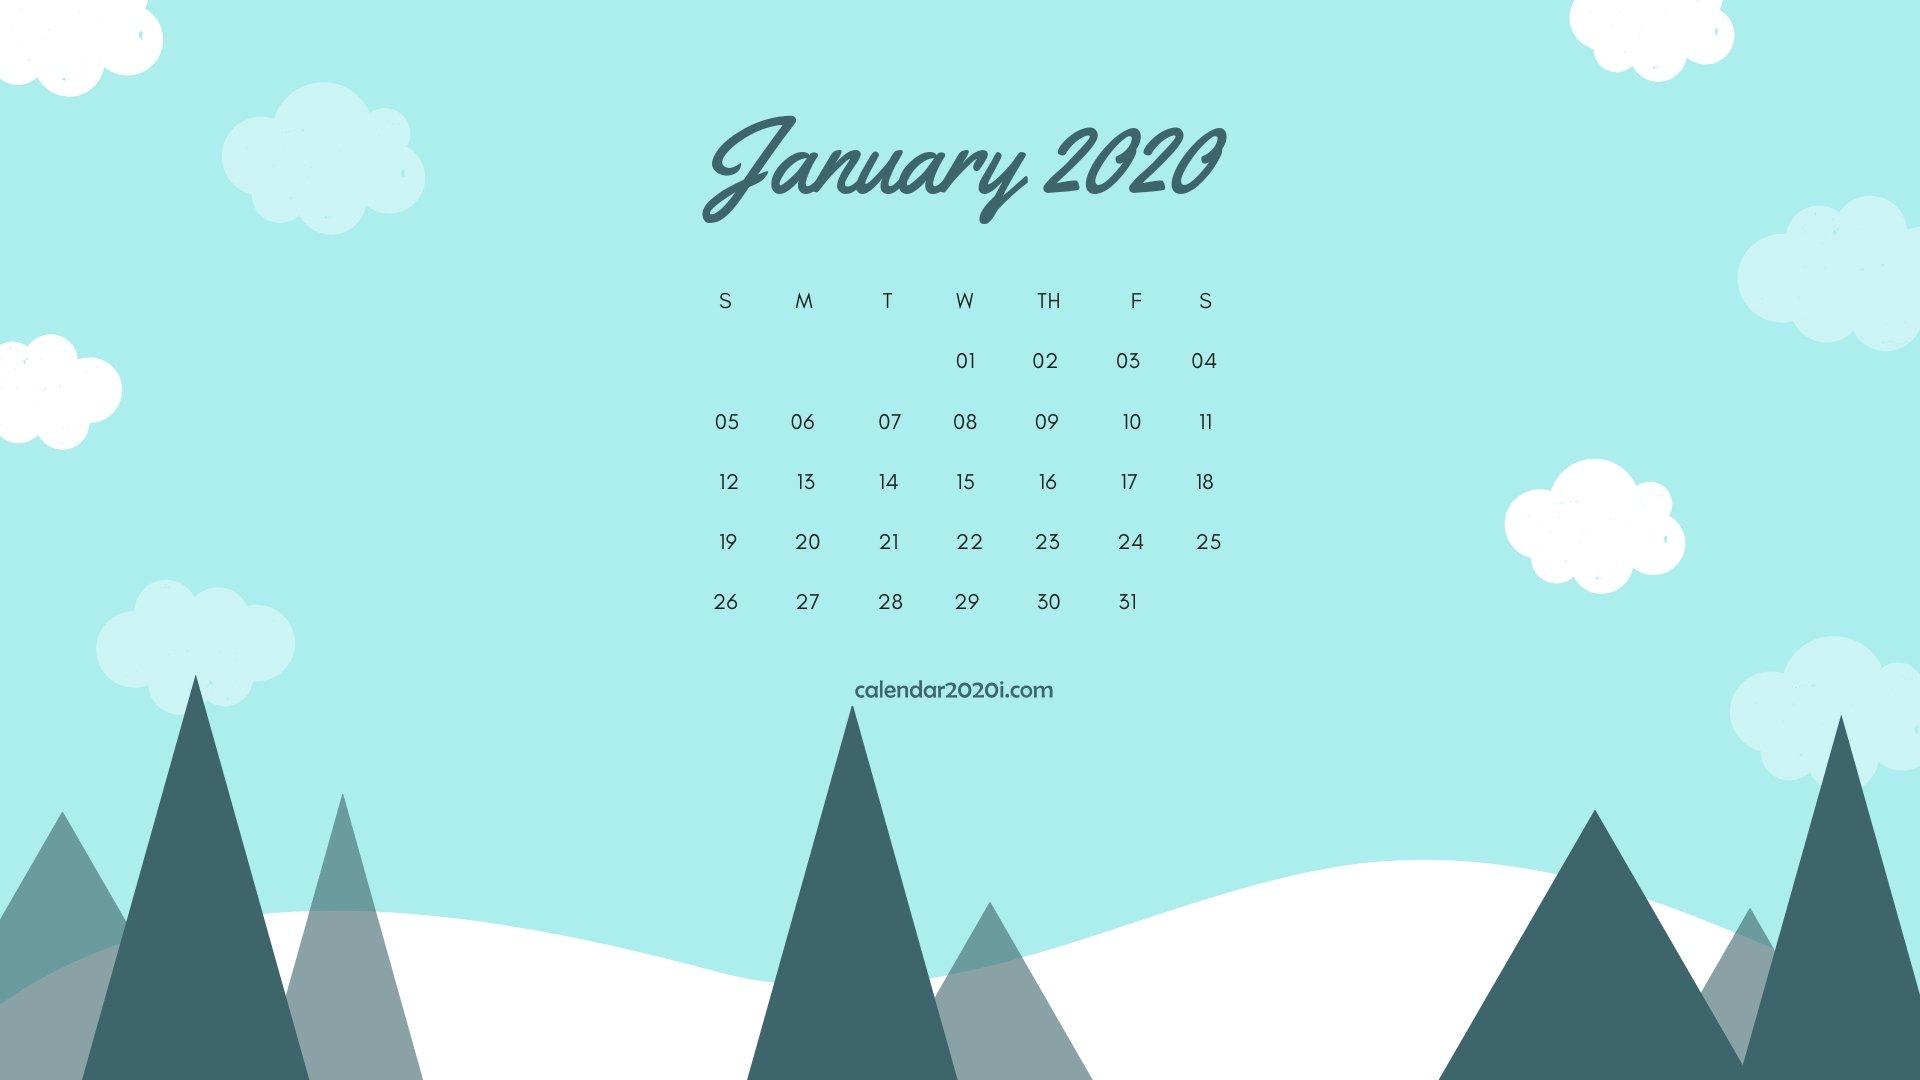 Calendar 2020 Wallpapers